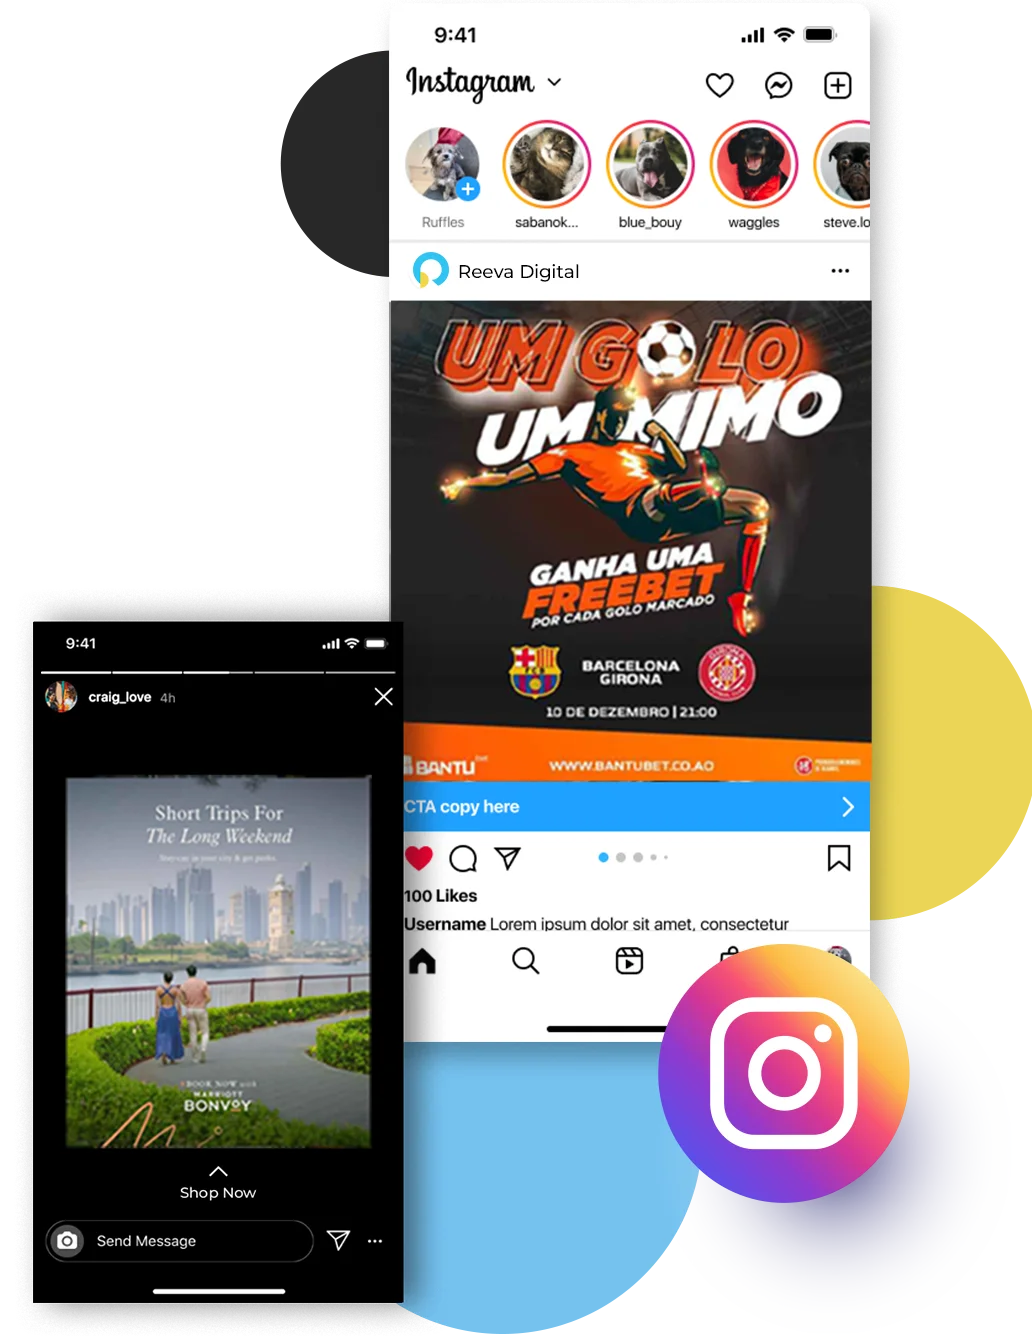 Instagram Marketing by Reeva Digital - Social Media Marketing